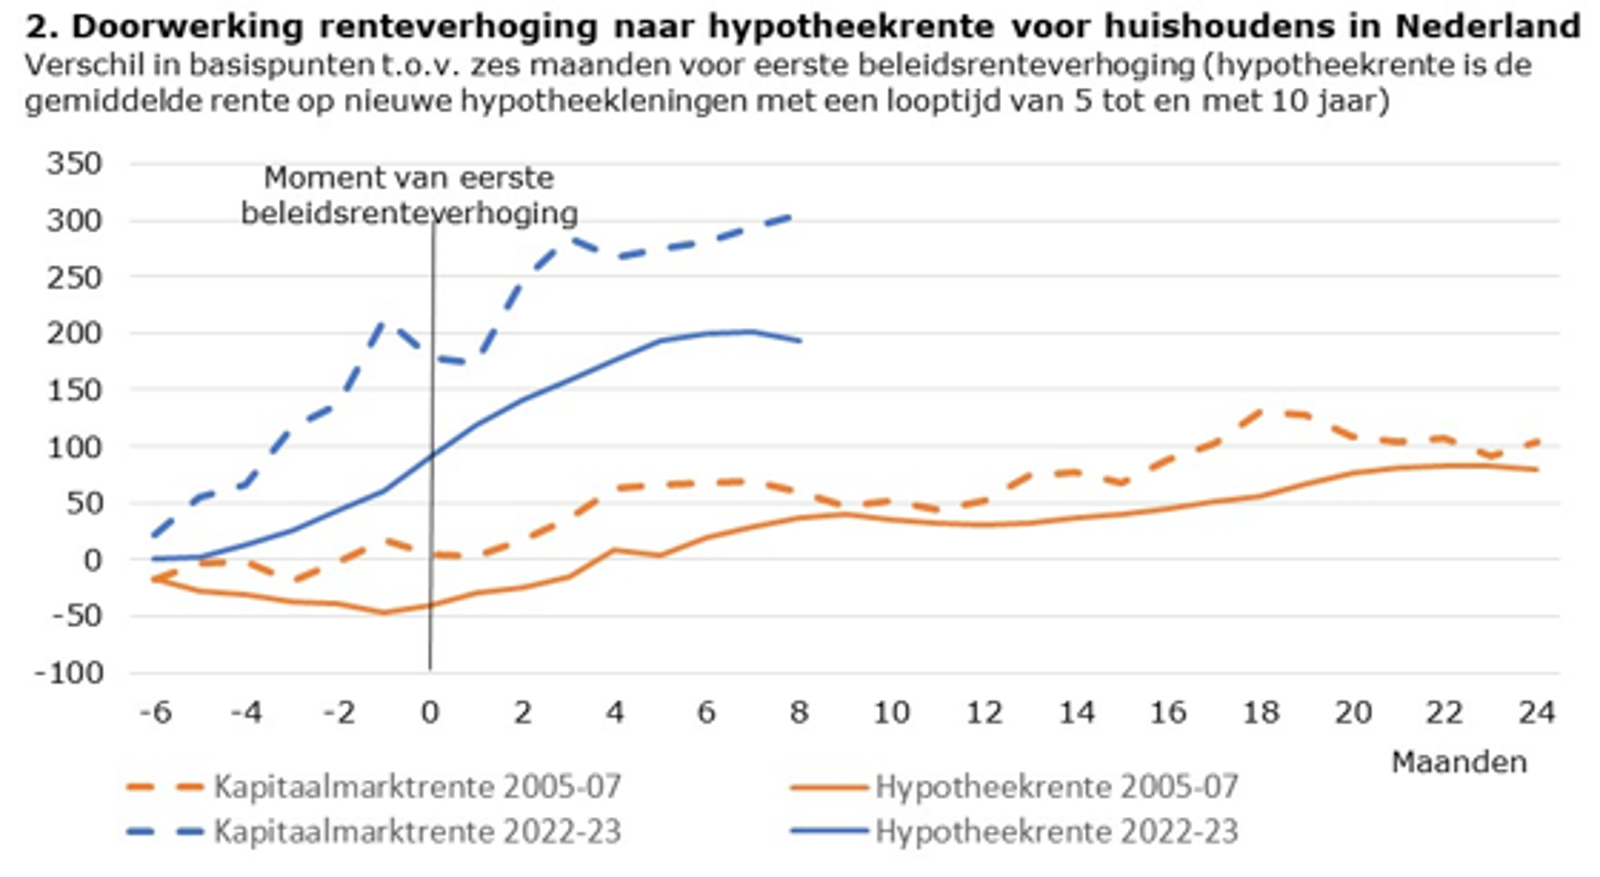 Doorwerking renteverhoging naar hypotheekrente voor huishoudens in Nederland